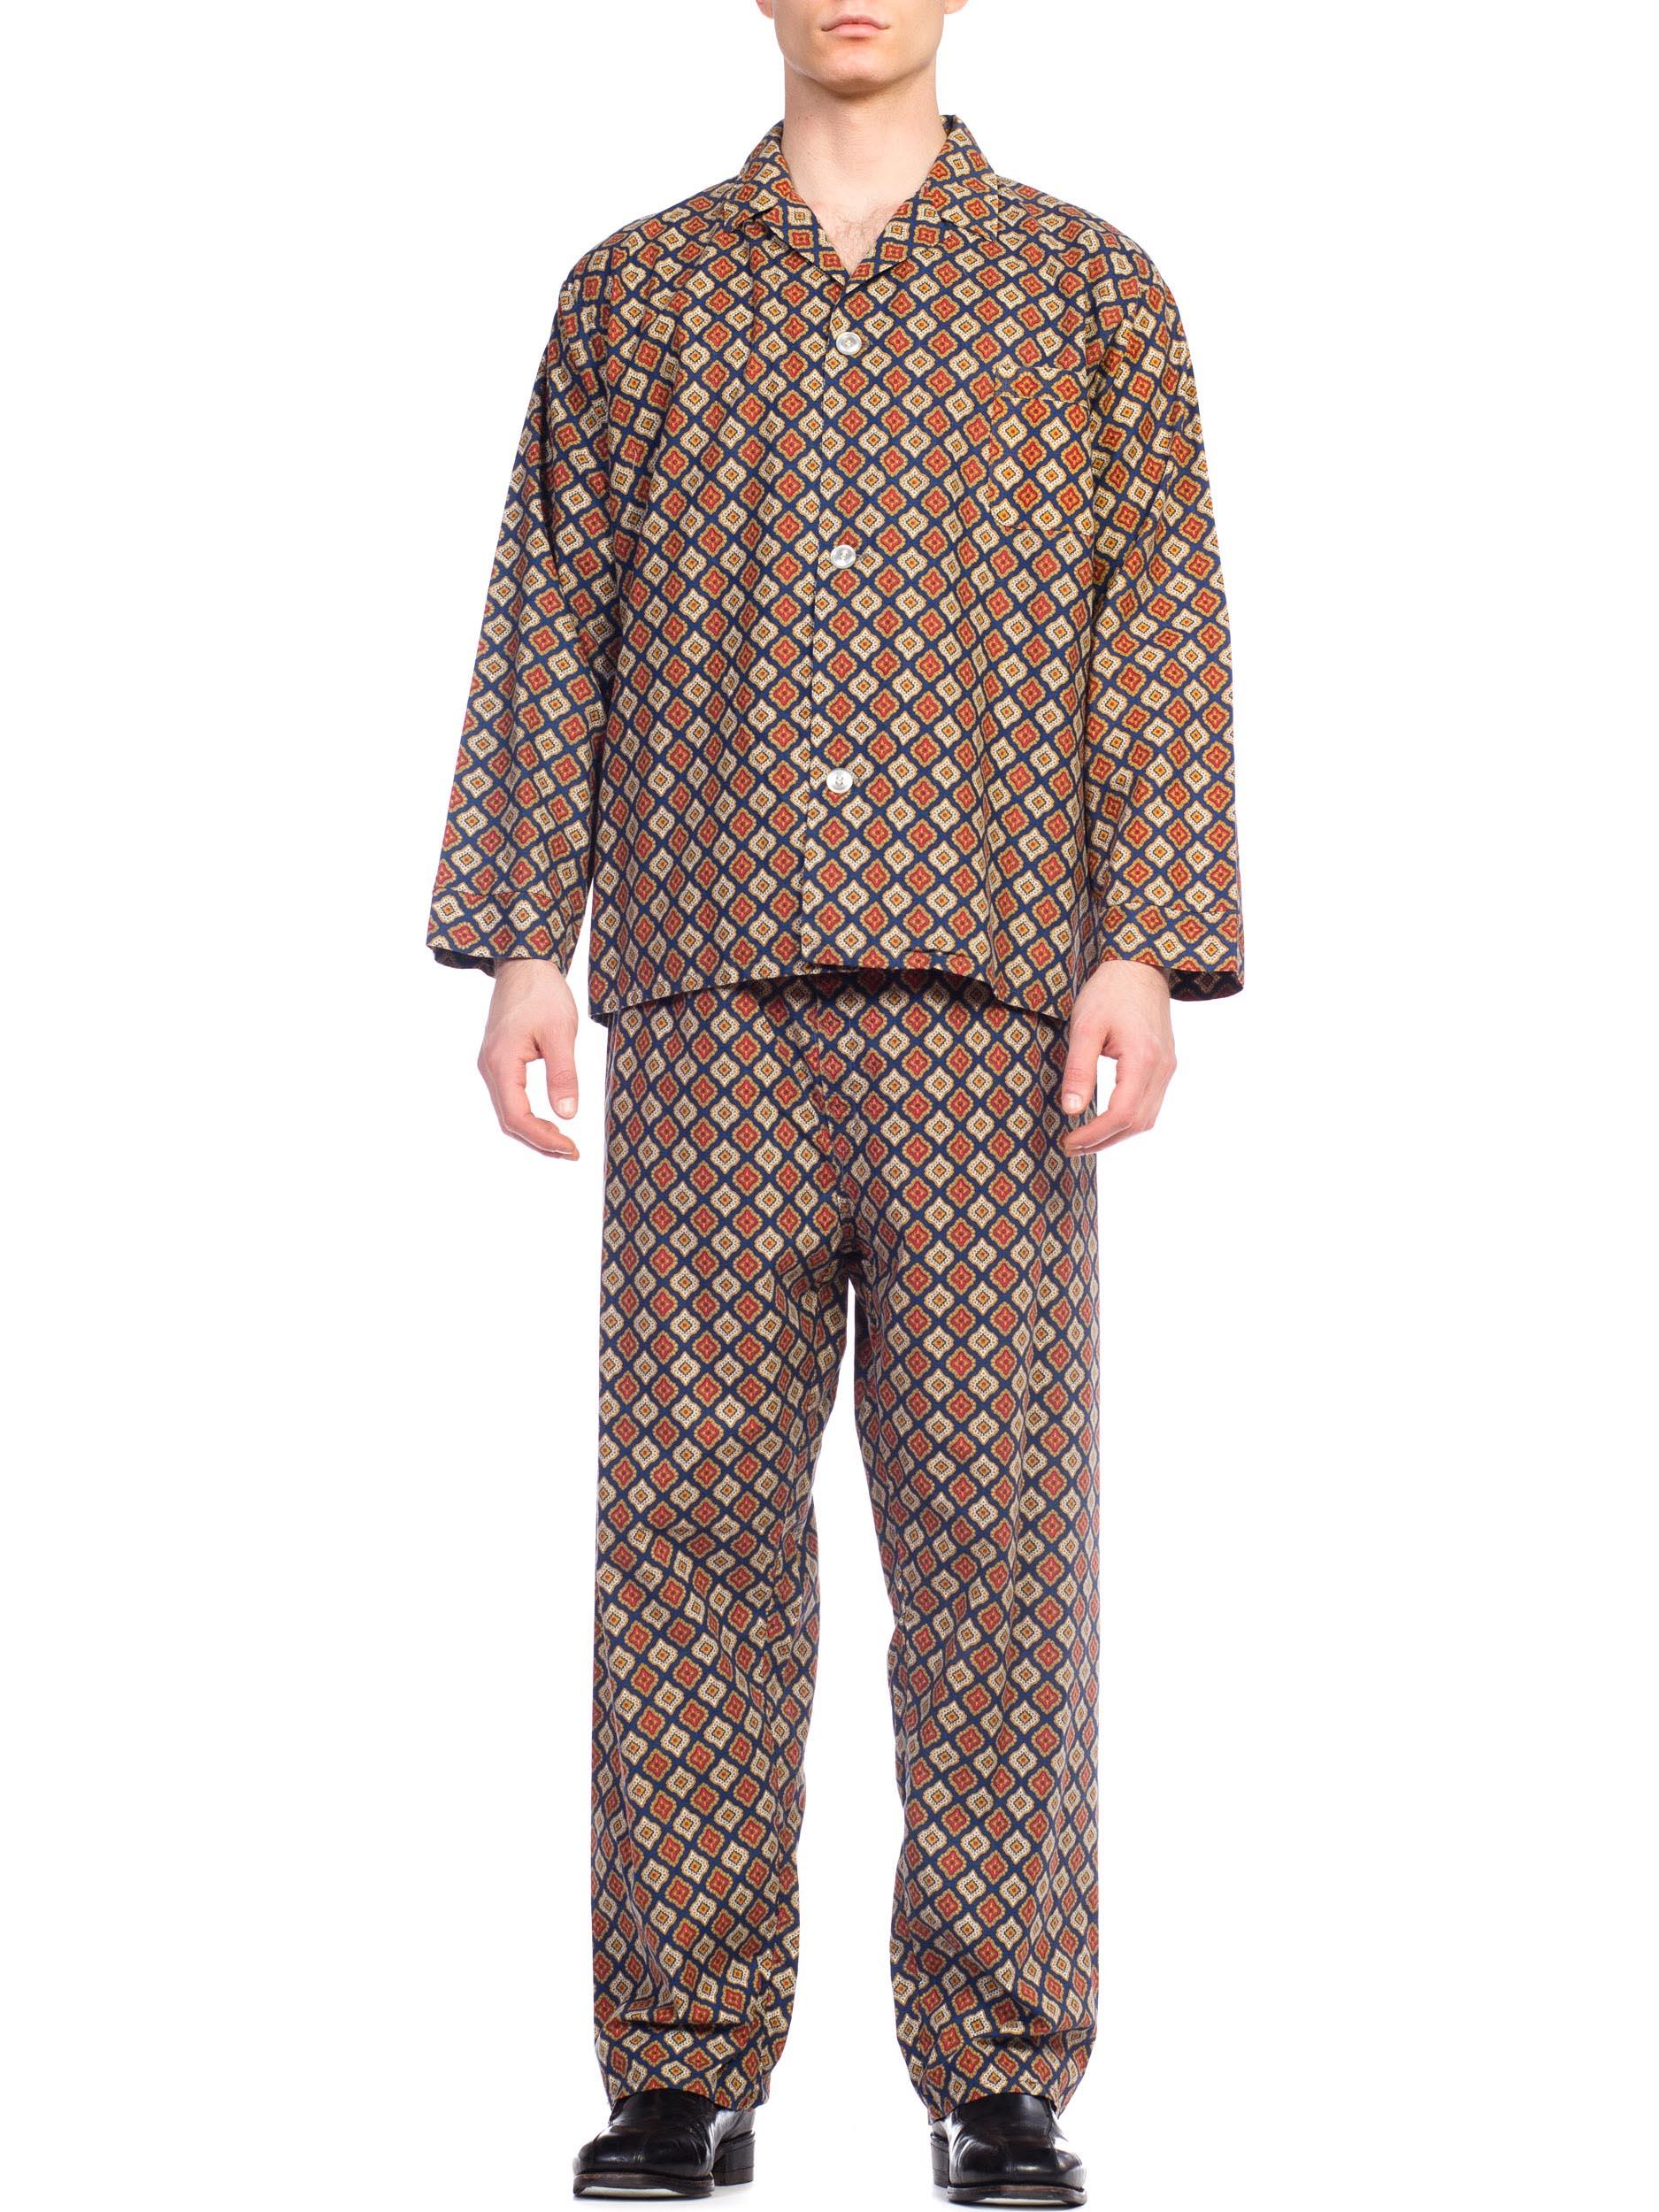 1960s mens pajamas